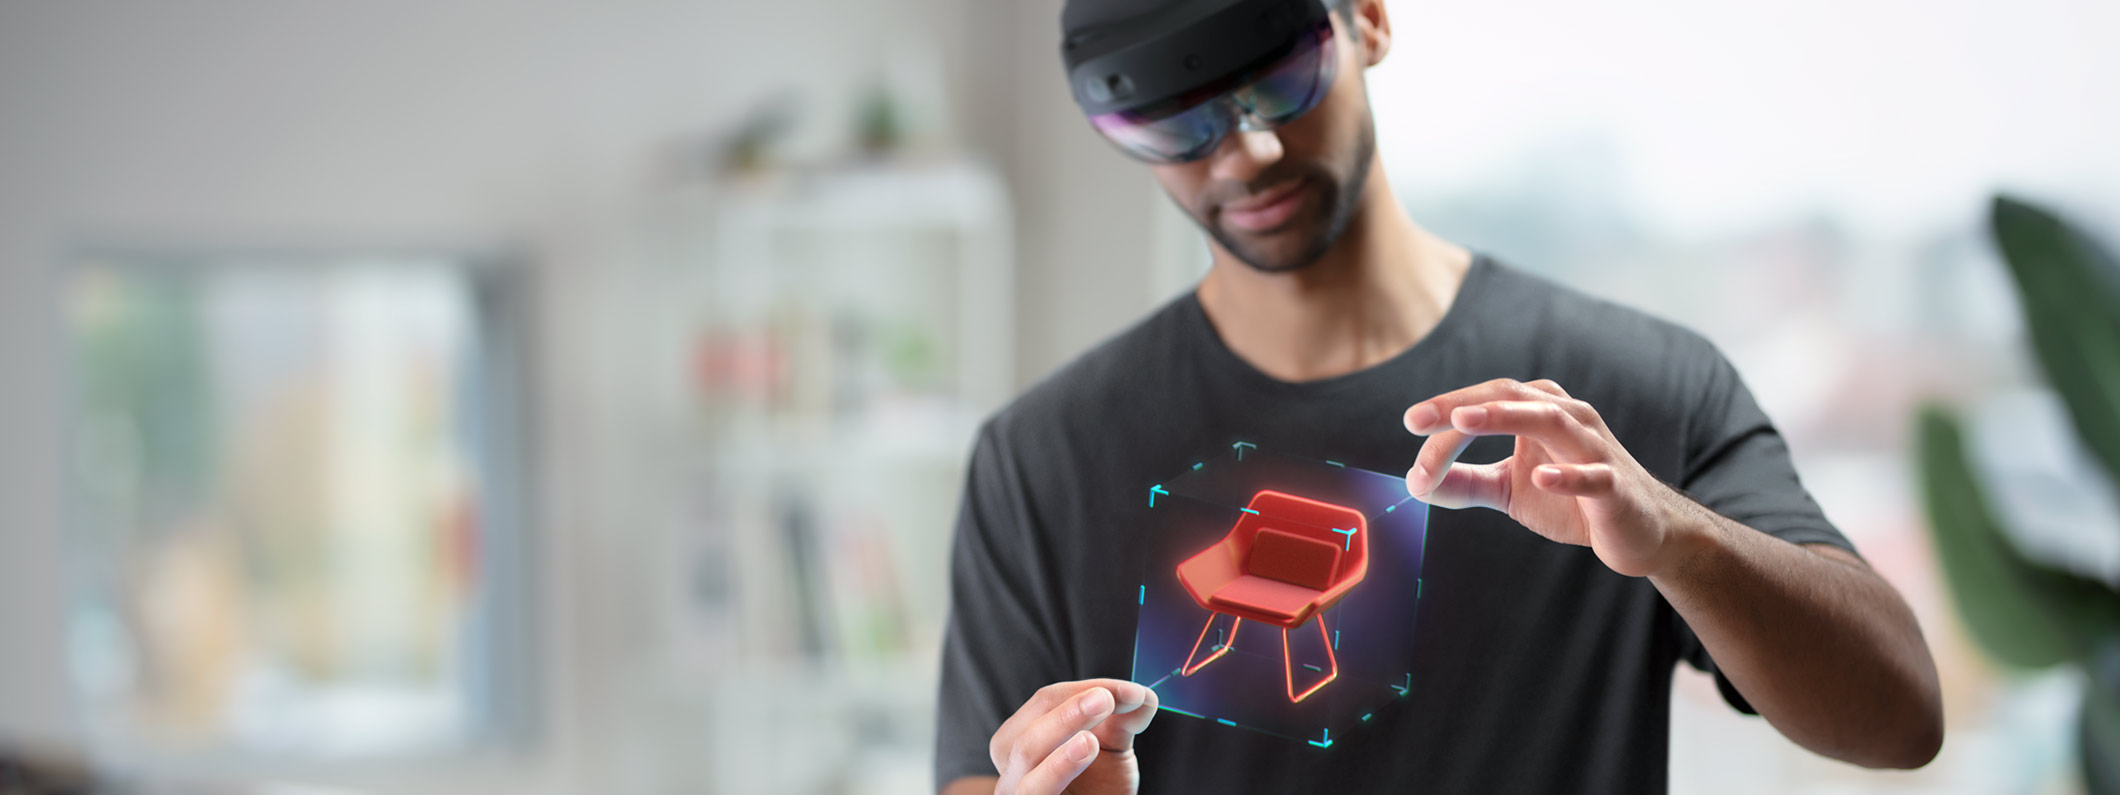 transmisión también riñones Empieza a desarrollar para realidad mixta | Microsoft HoloLens